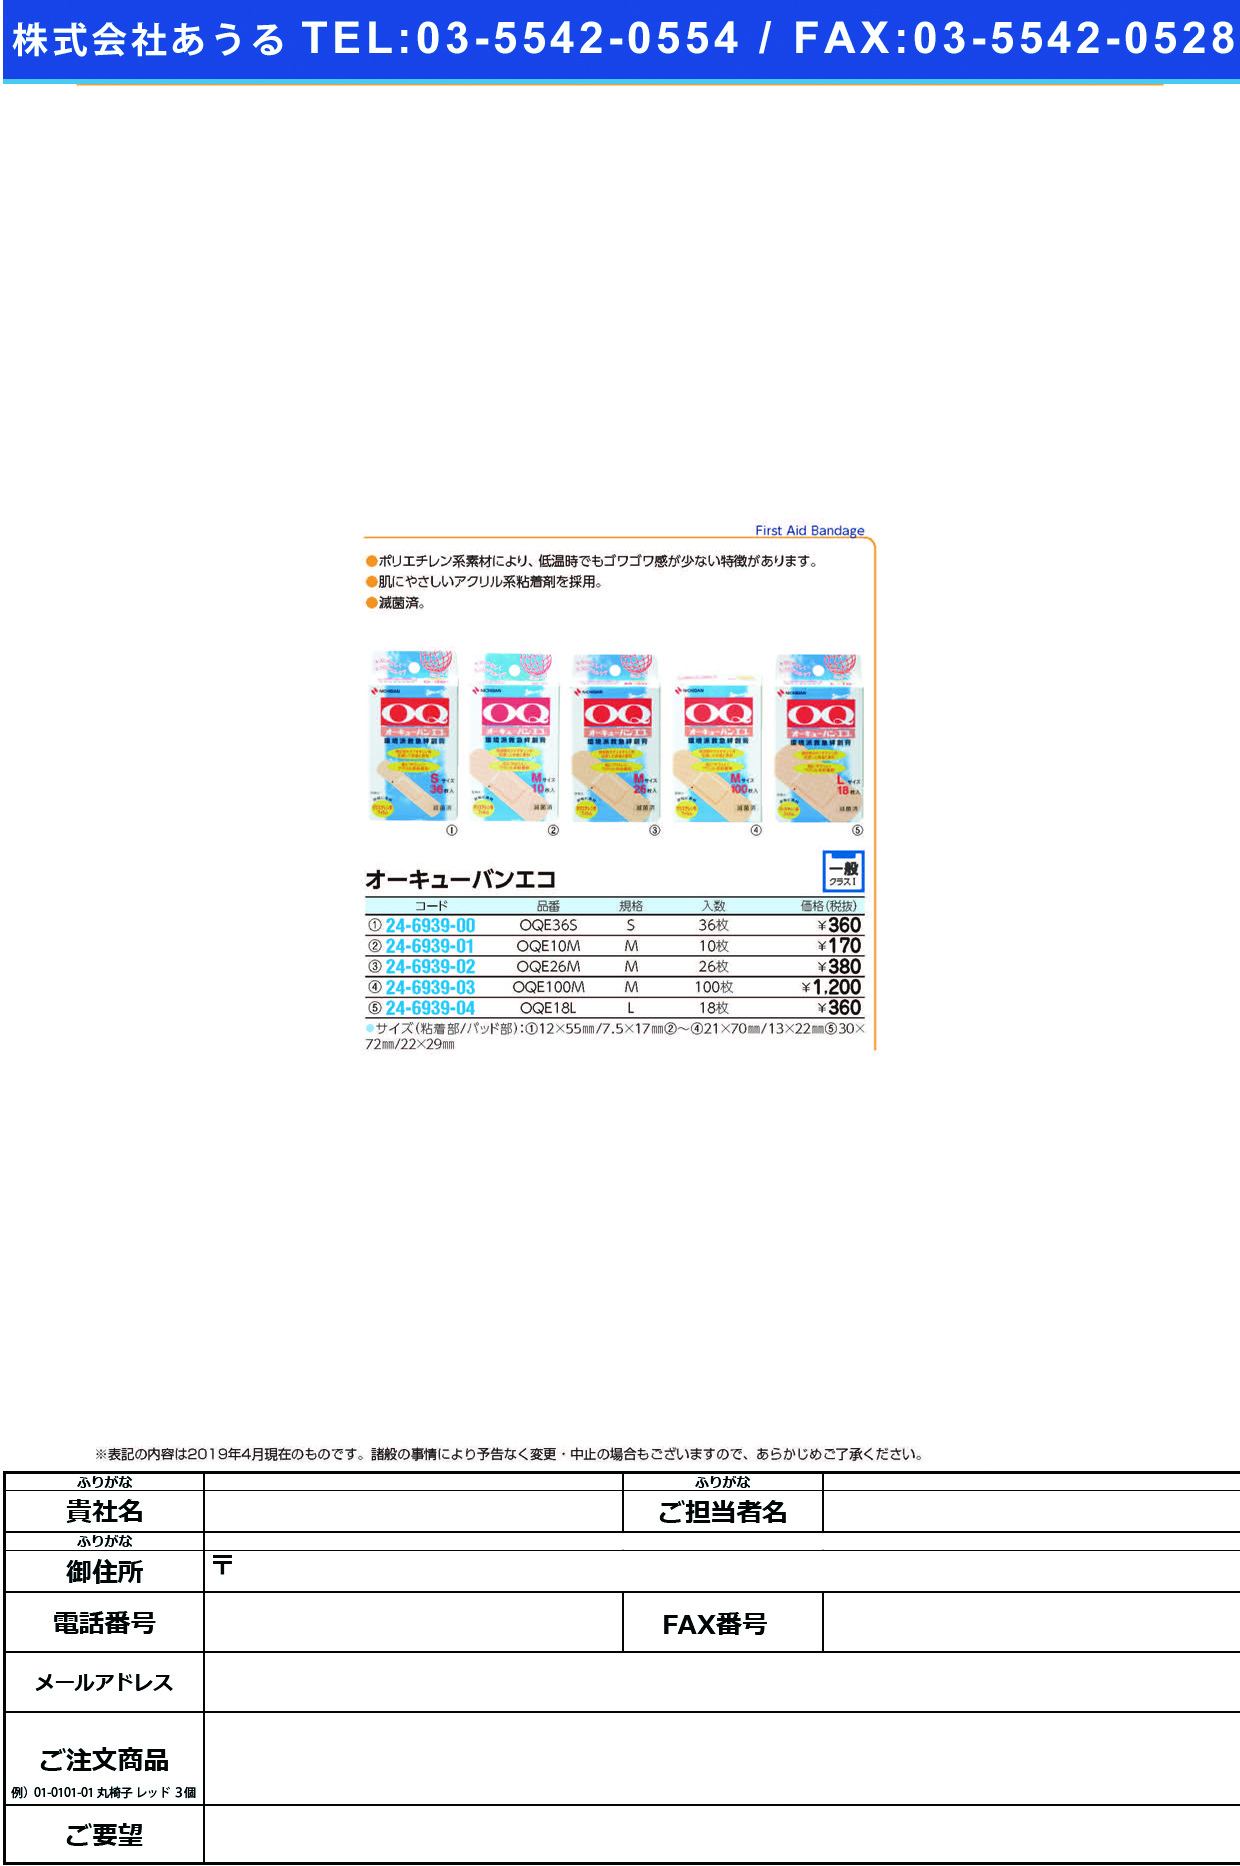 (24-6939-00)オーキューバンエコ OQE36S(S)36ﾏｲ ｵｰｷｭｰﾊﾞﾝｴｺ(ニチバン)【1個単位】【2019年カタログ商品】